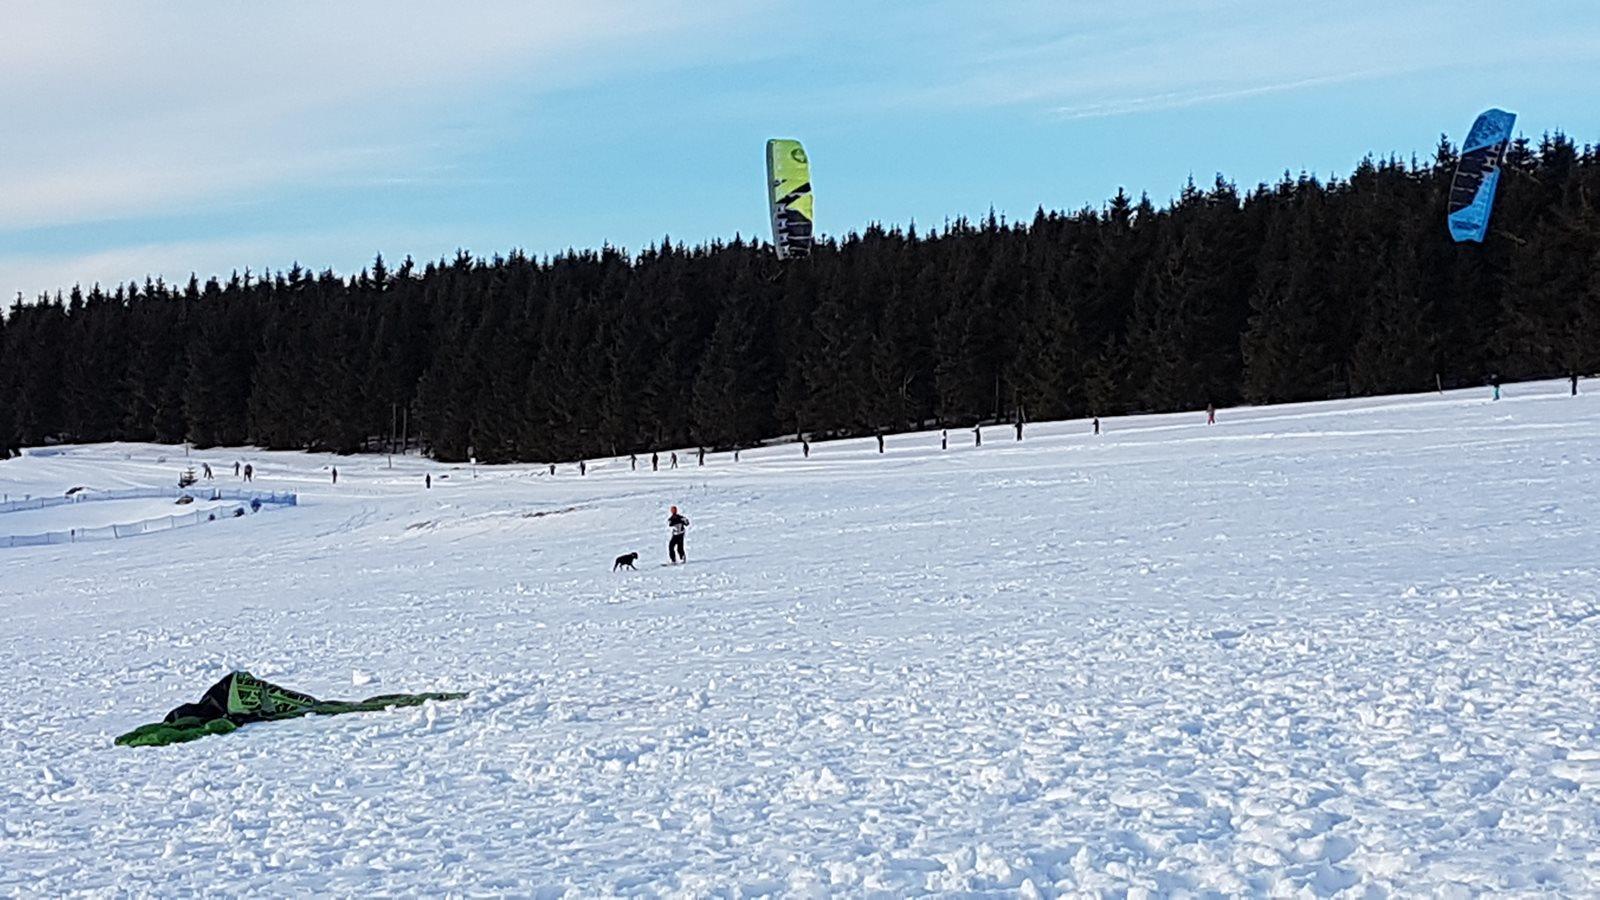 Harakiri kite kurzy + Kiteboarding.cz snowkite test centrum Boží Dar